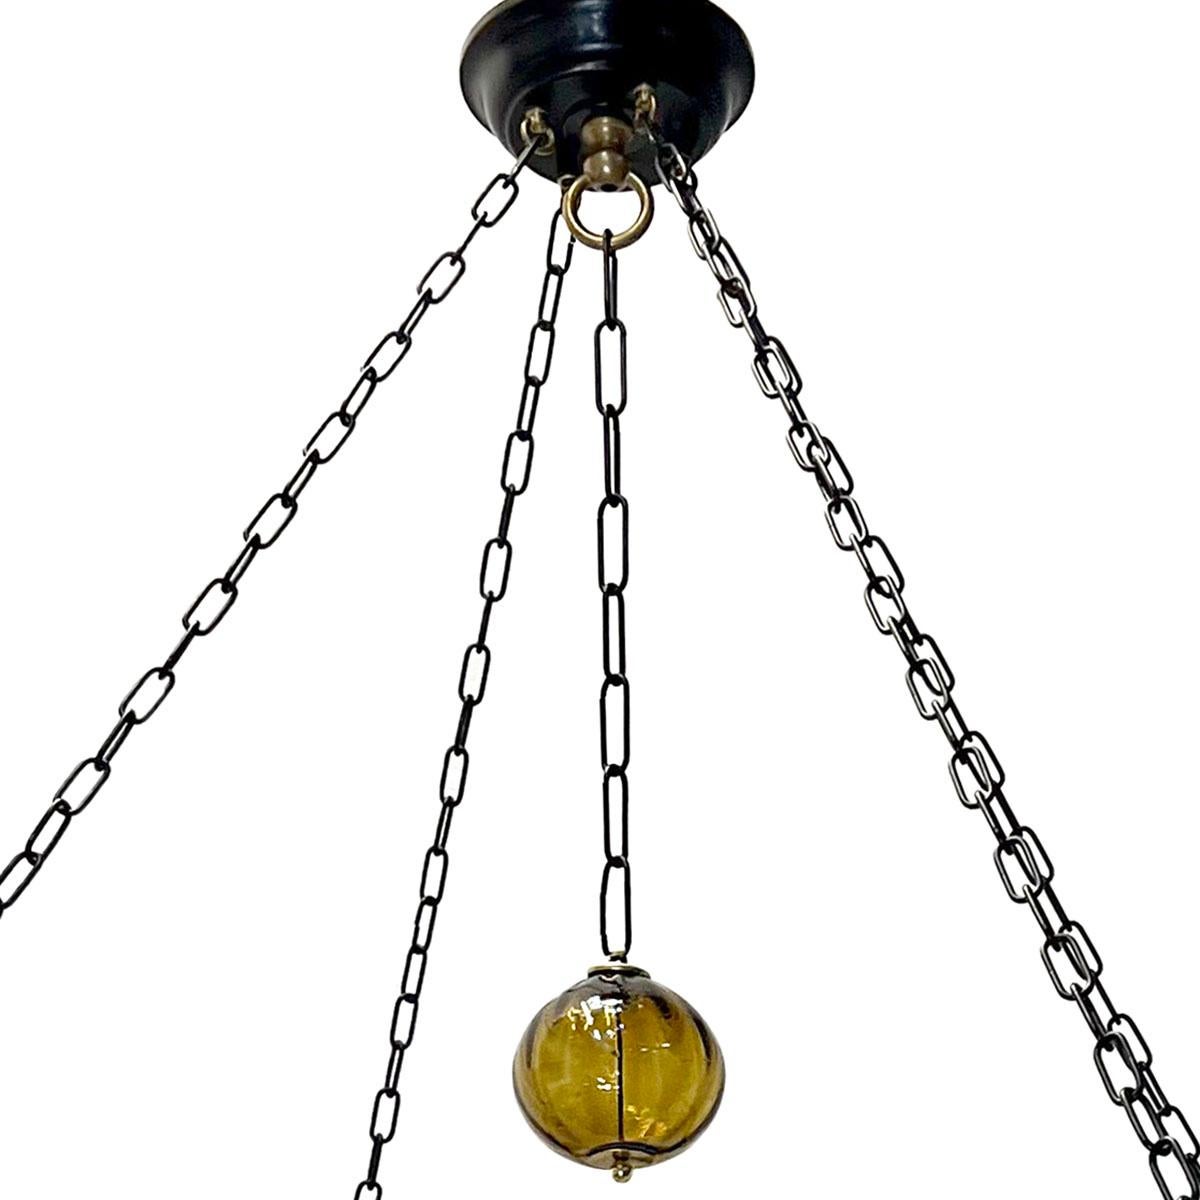 Un lustre suédois en fer forgé de dix-huit lumières, datant des années 1950, avec des pendentifs en verre ambré soufflé.

Mesures :
Diamètre : 48